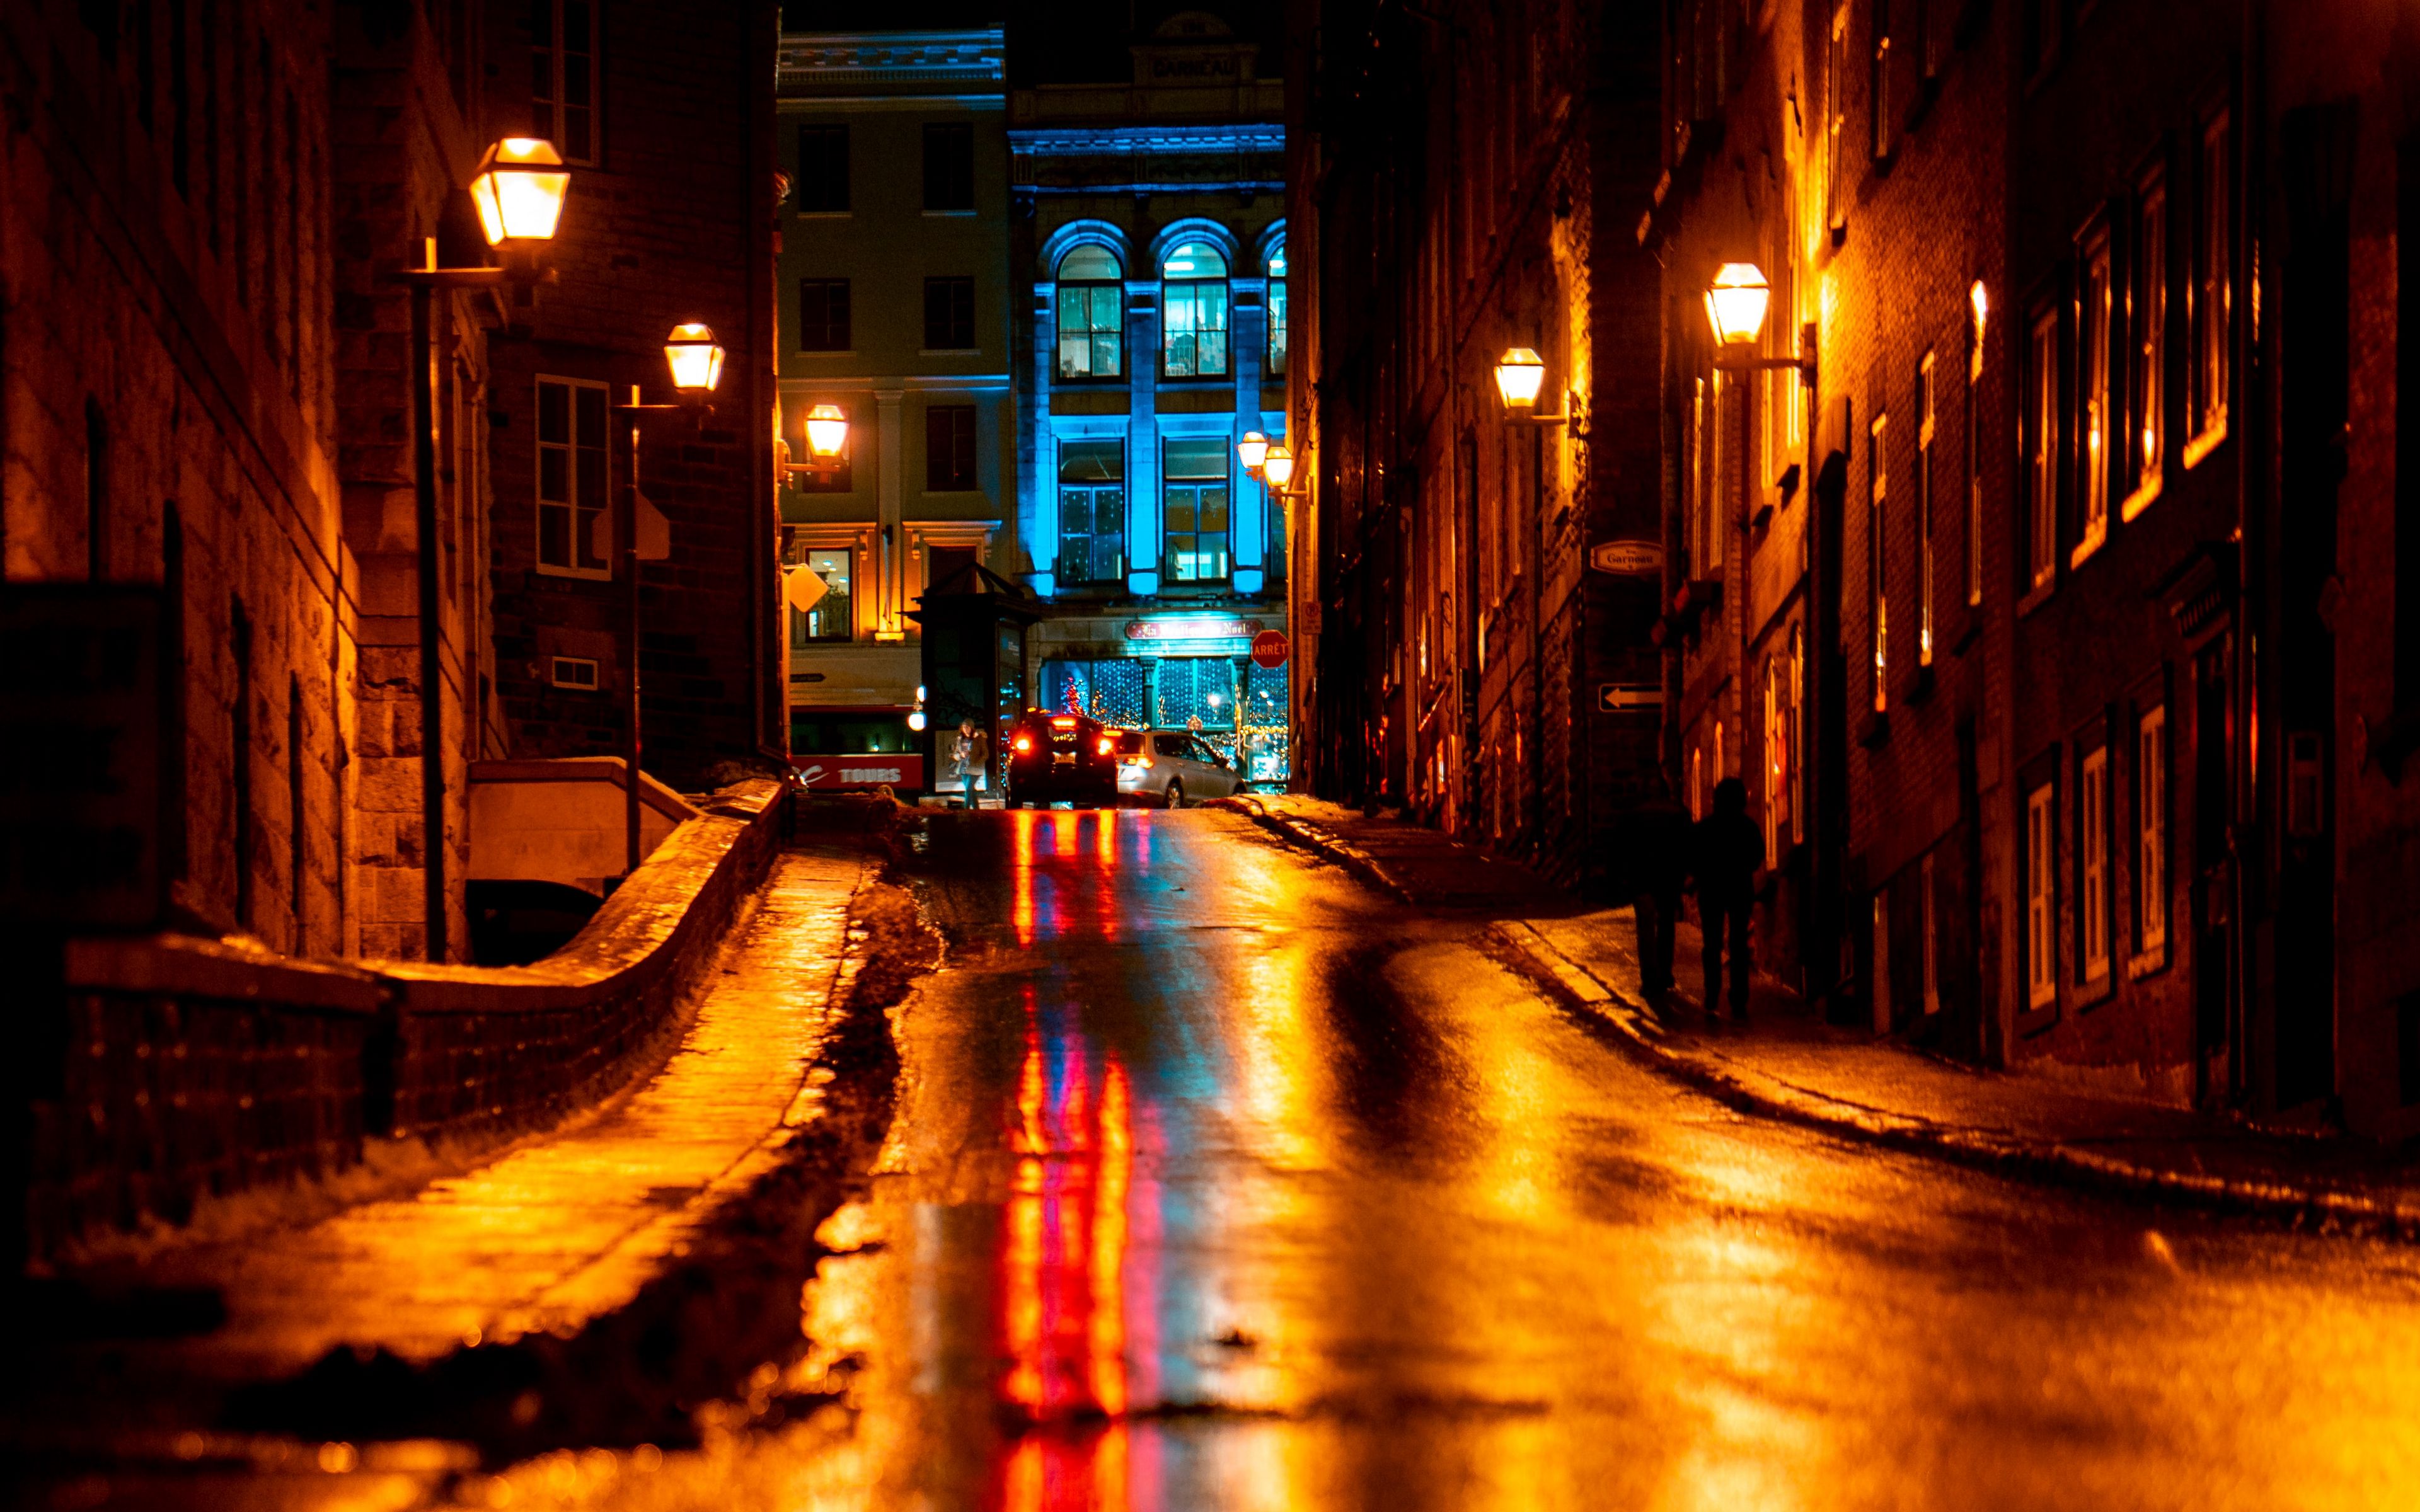 Улица день ночь